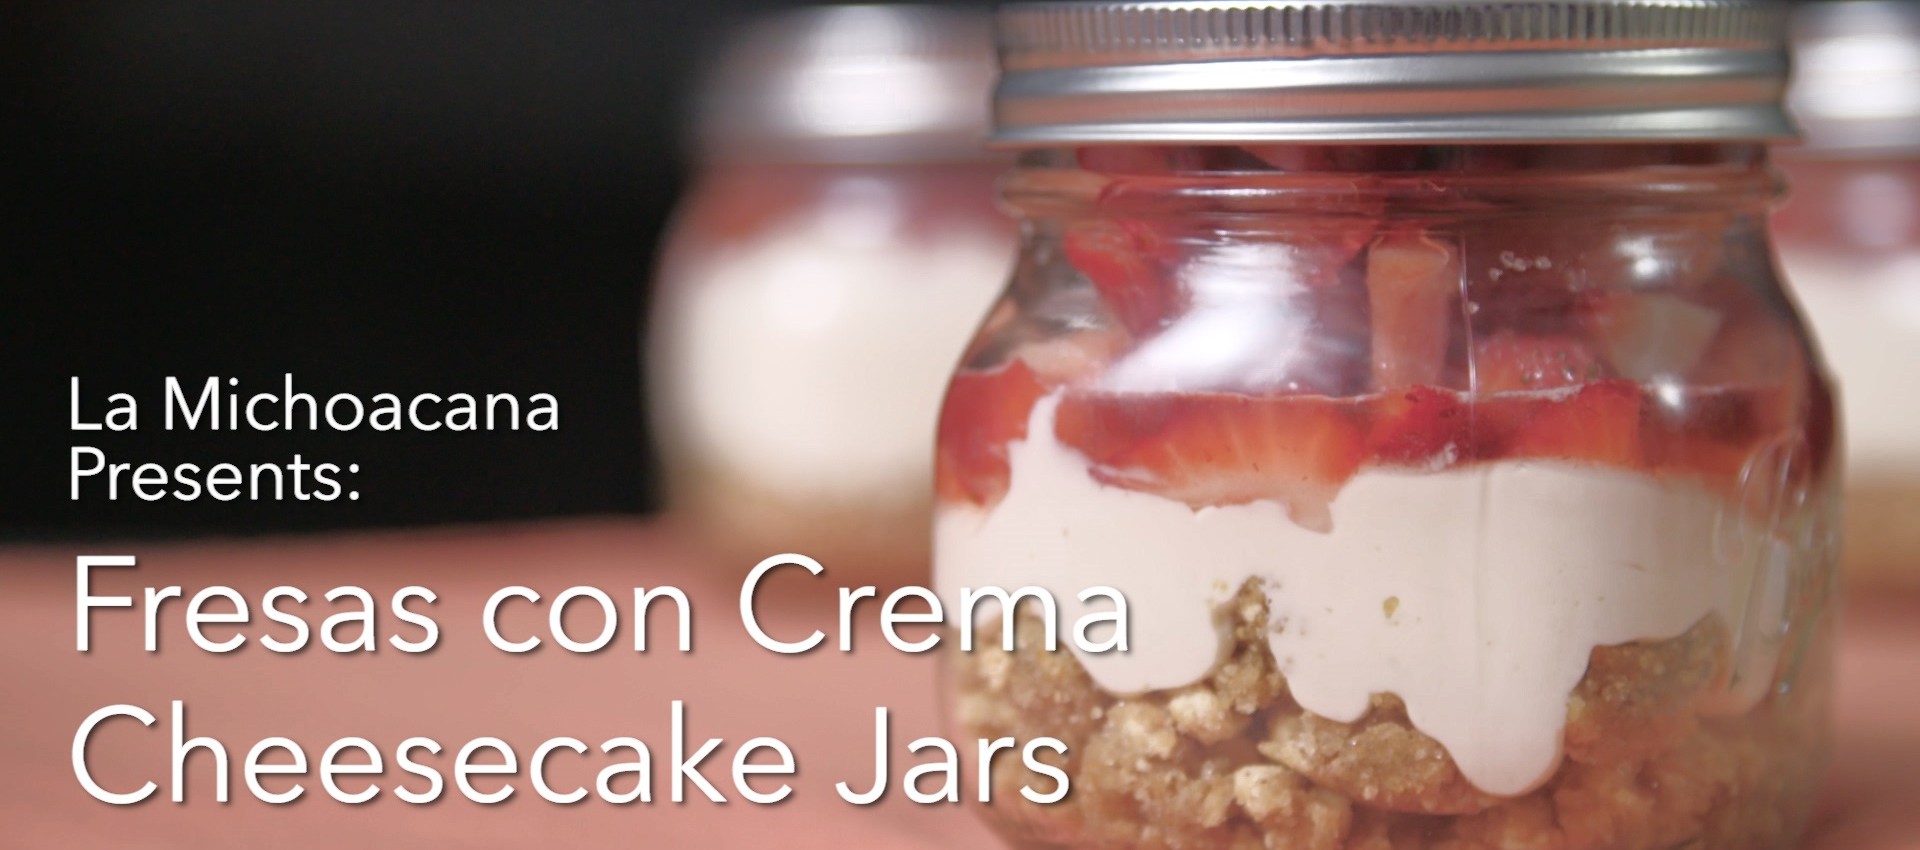 Strawberry Cheesecake Jars Image